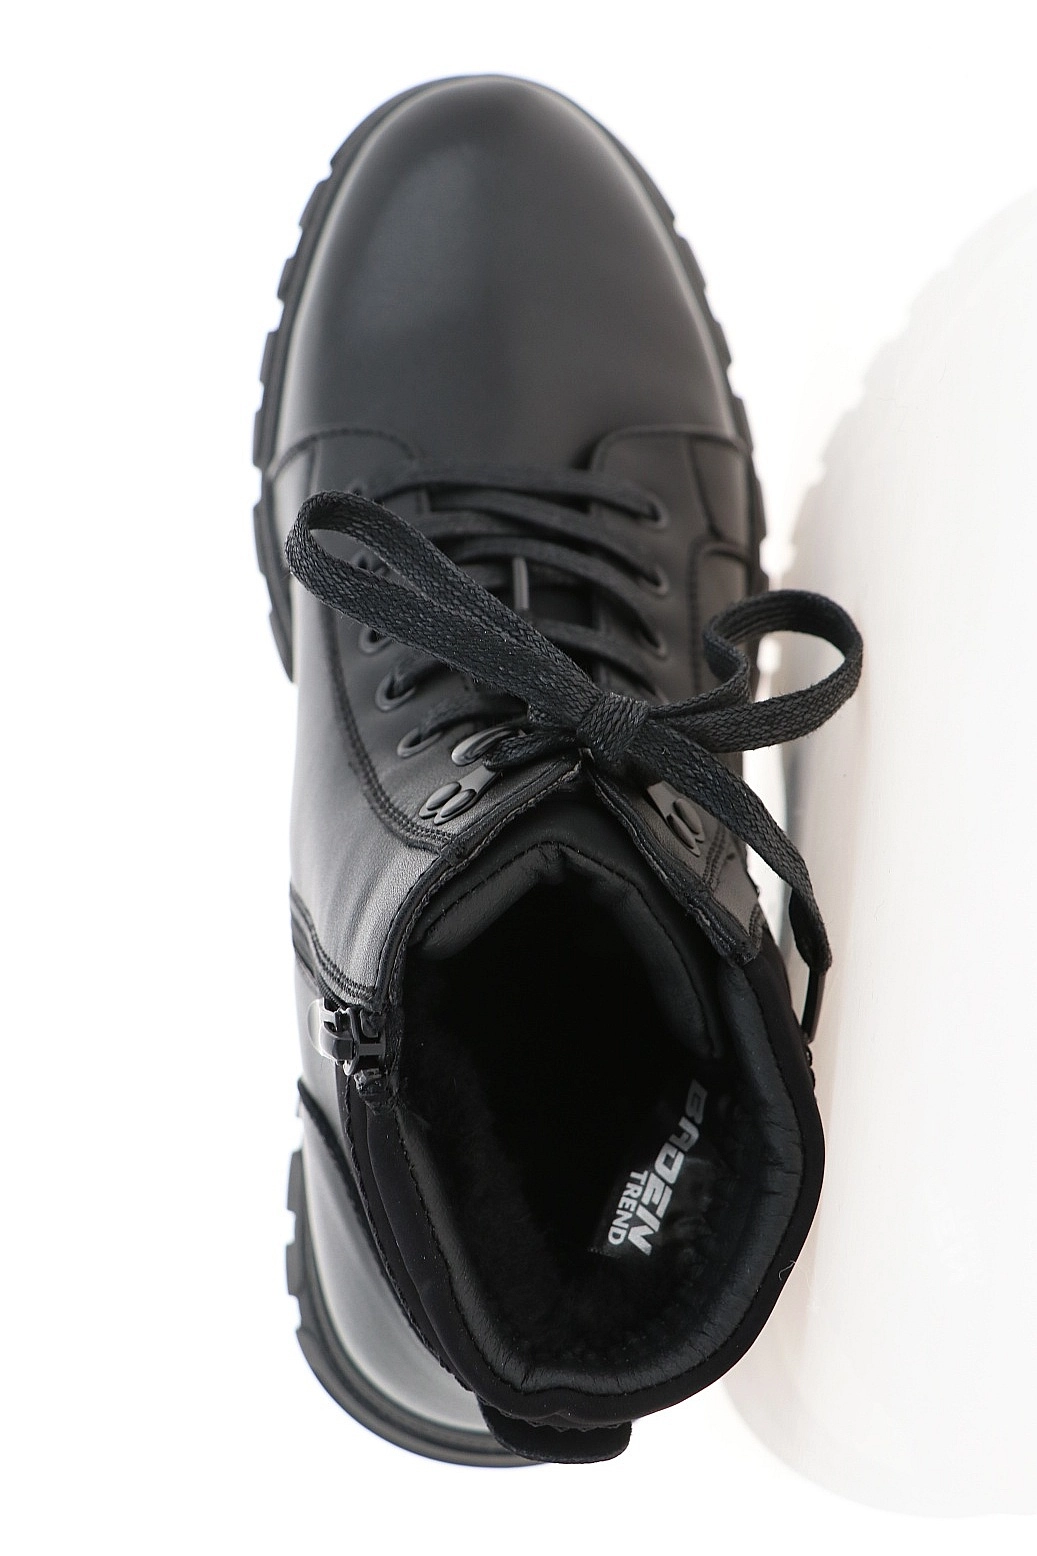 Ботинки Baden черные LZ174-020 купить в Екатеринбурге за 5850 руб